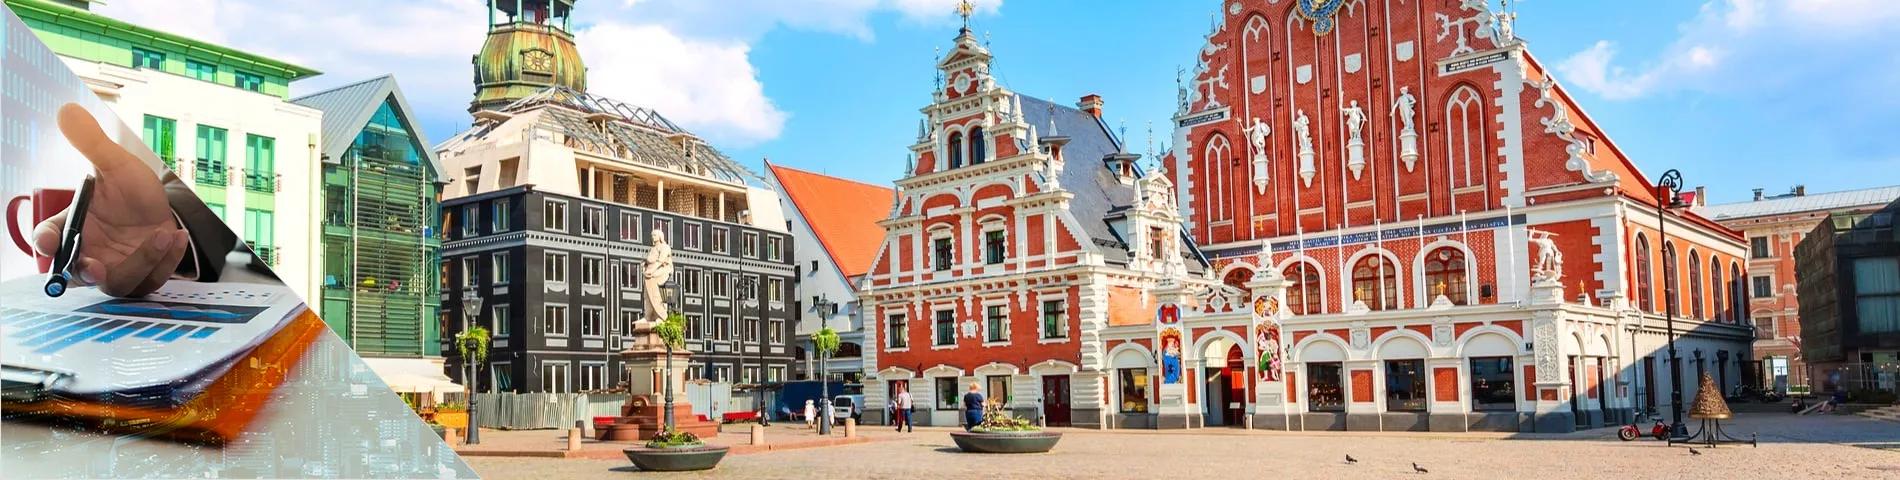 Riga - Banca i Finances